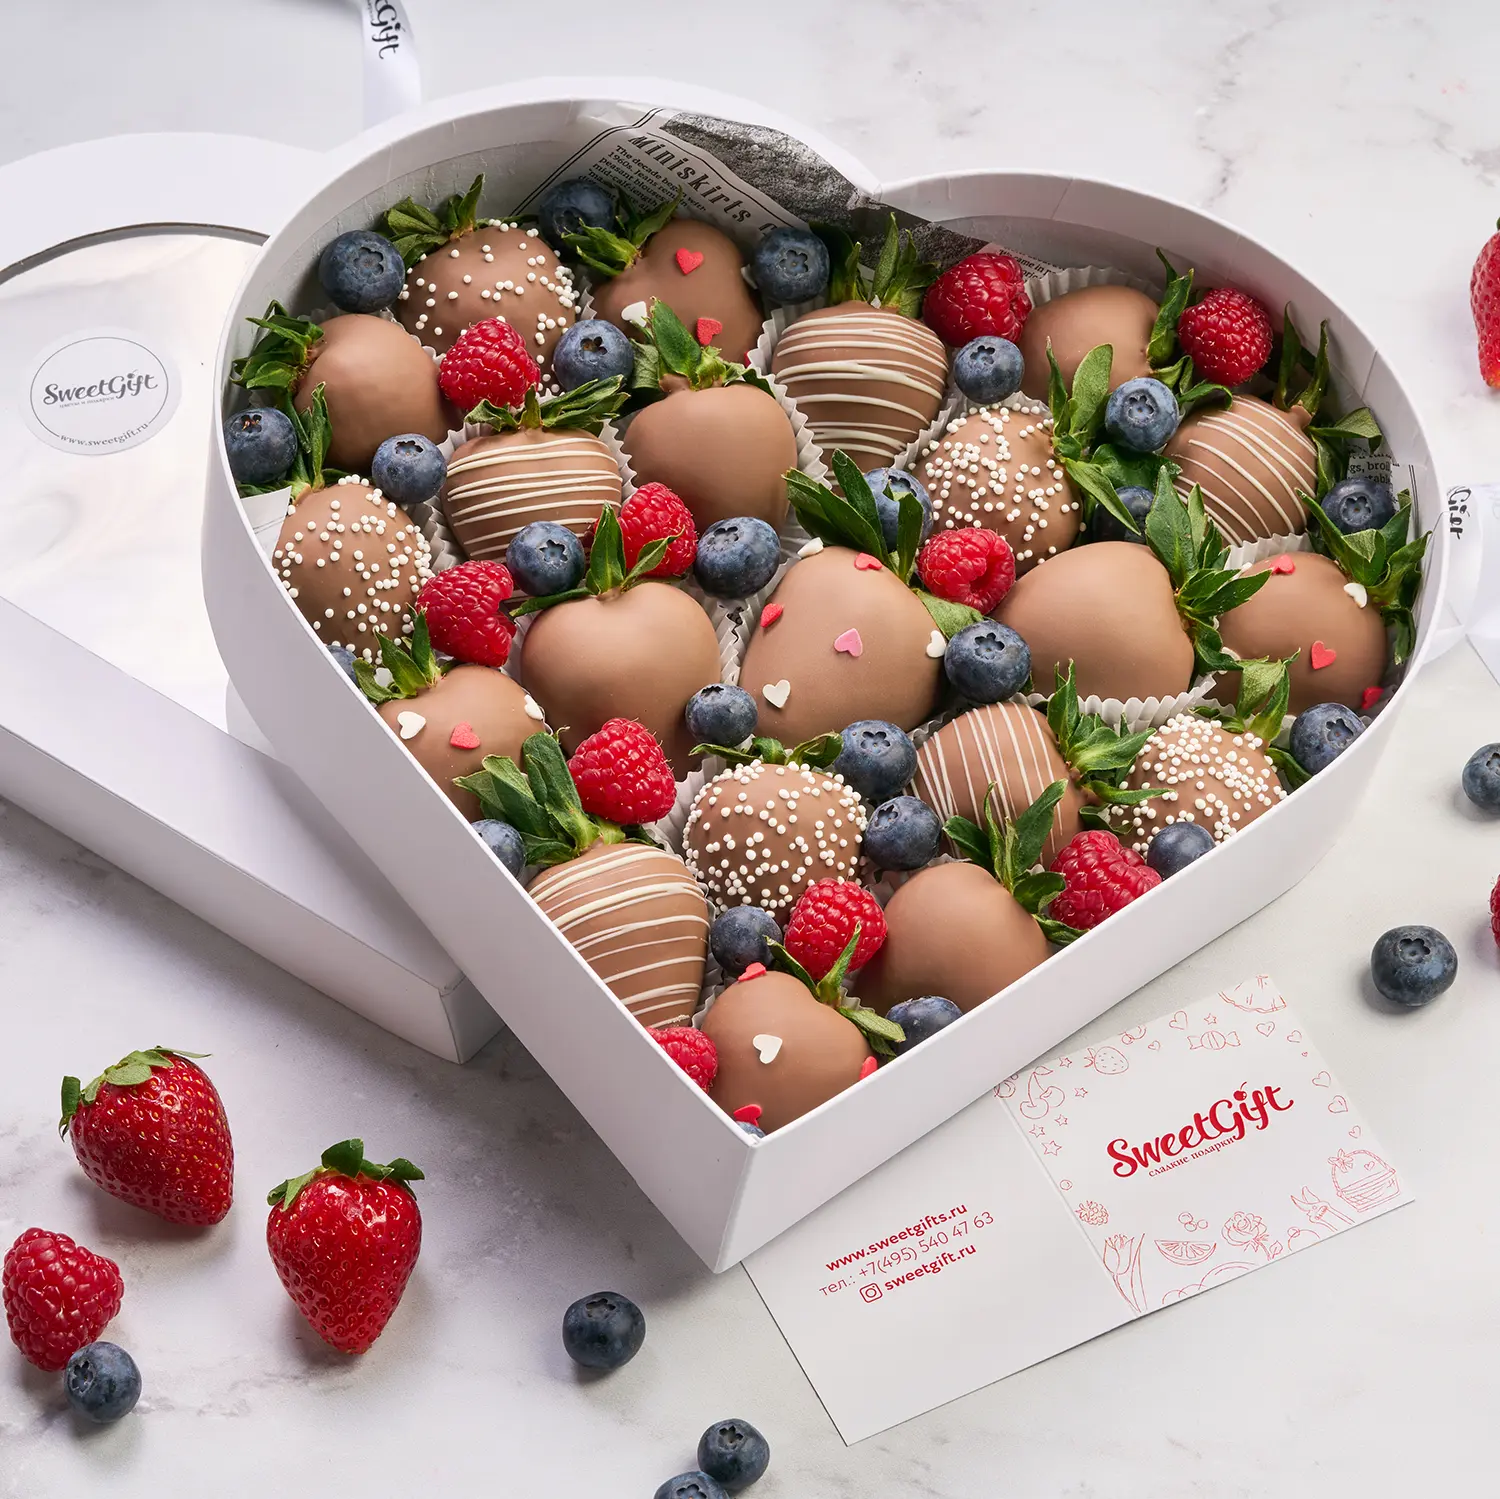 Подарочный набор из ягод в бельгийском шоколаде "Сердце"4 800 руб.